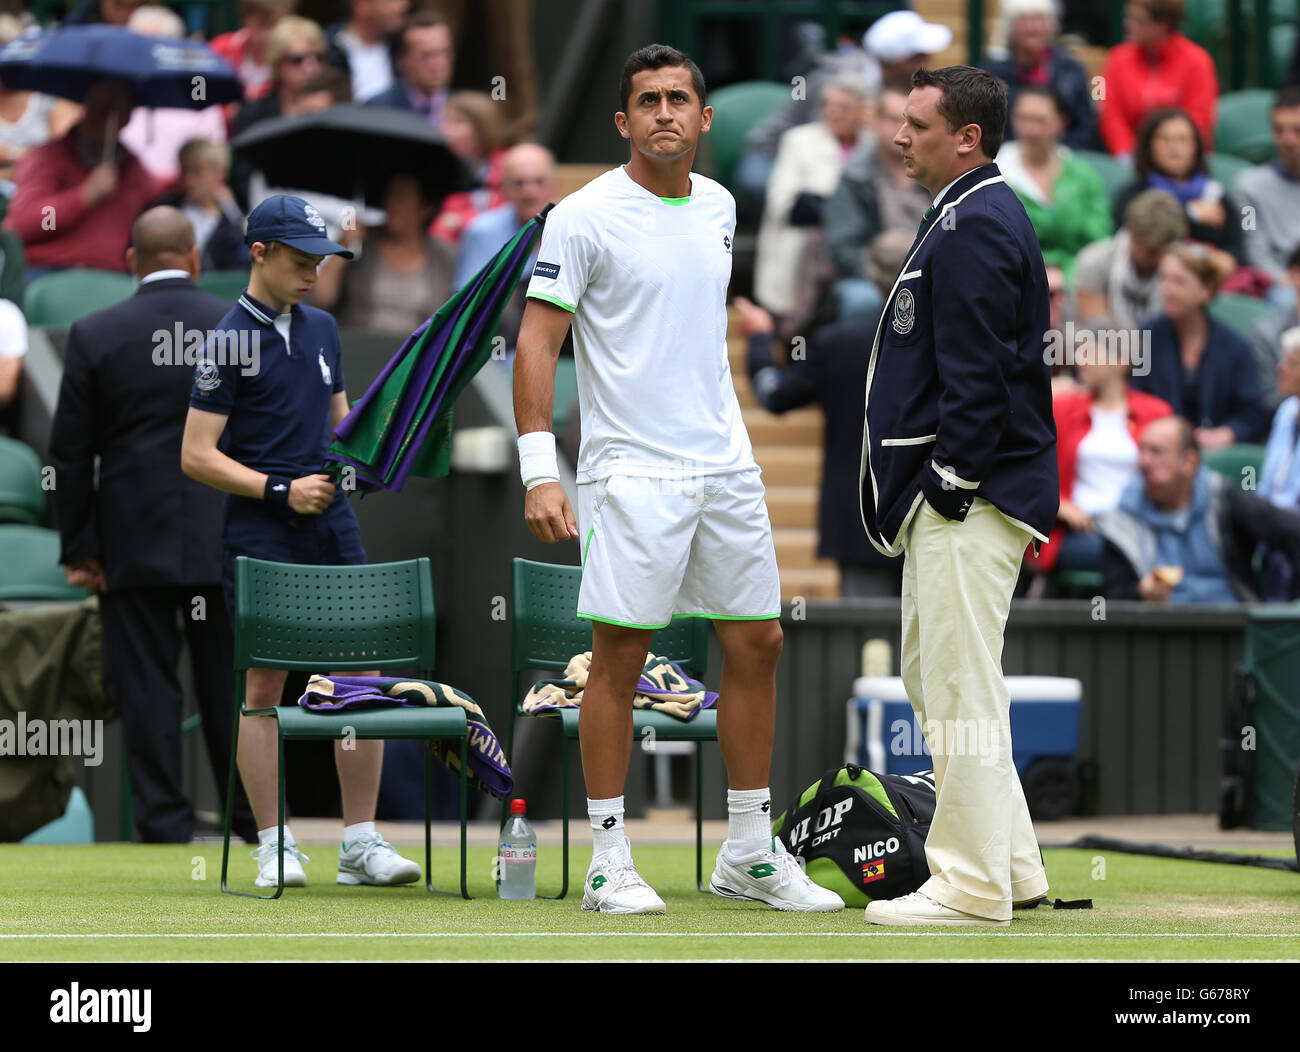 Wimbledon rain umpire hi-res stock photography and images - Alamy